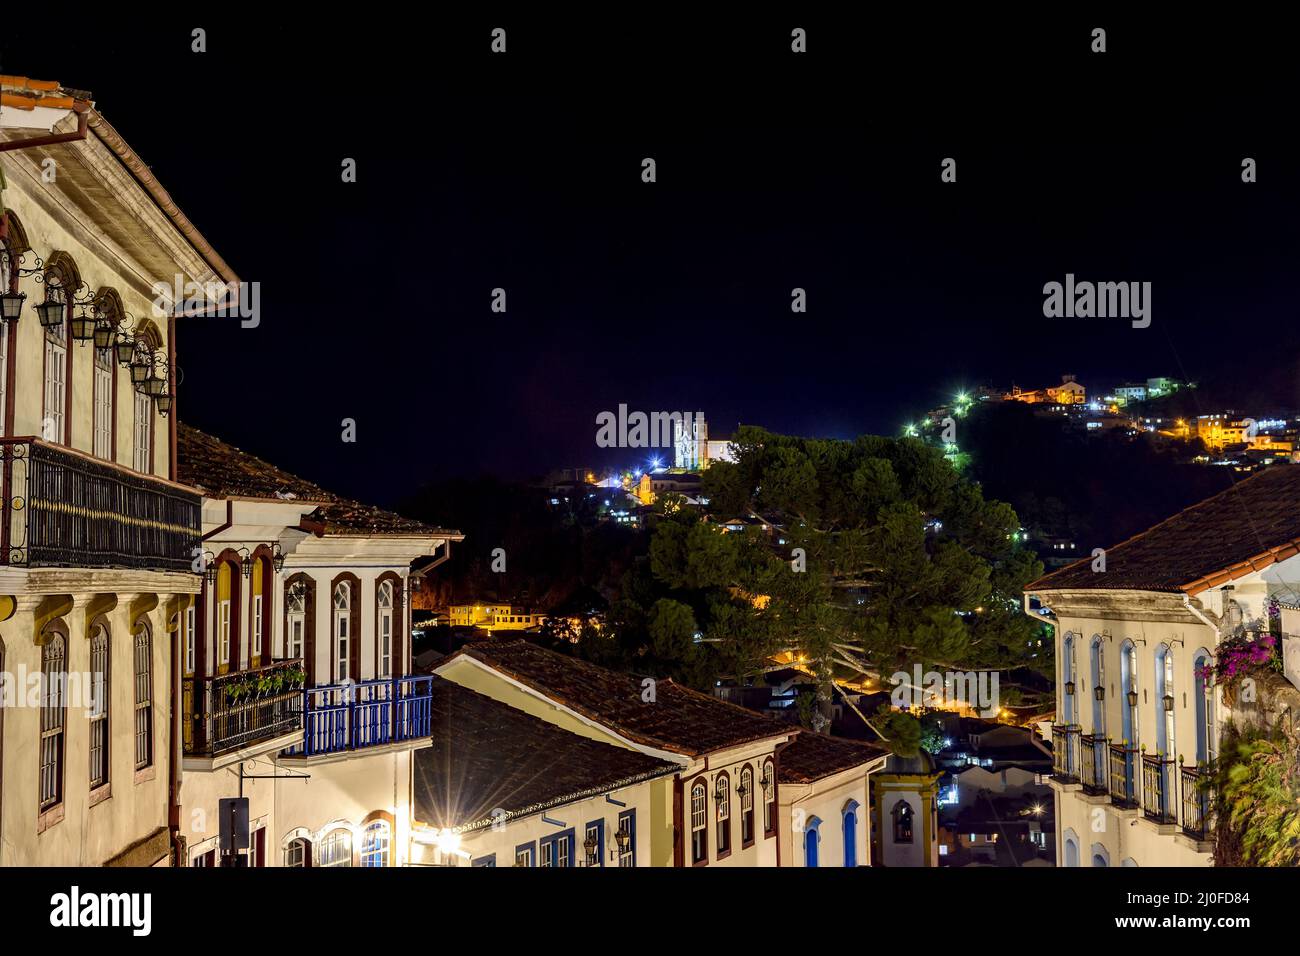 Fachadas de casas de arquitectura colonial en una antigua calle empedrada iluminada por la noche con gran altura Foto de stock